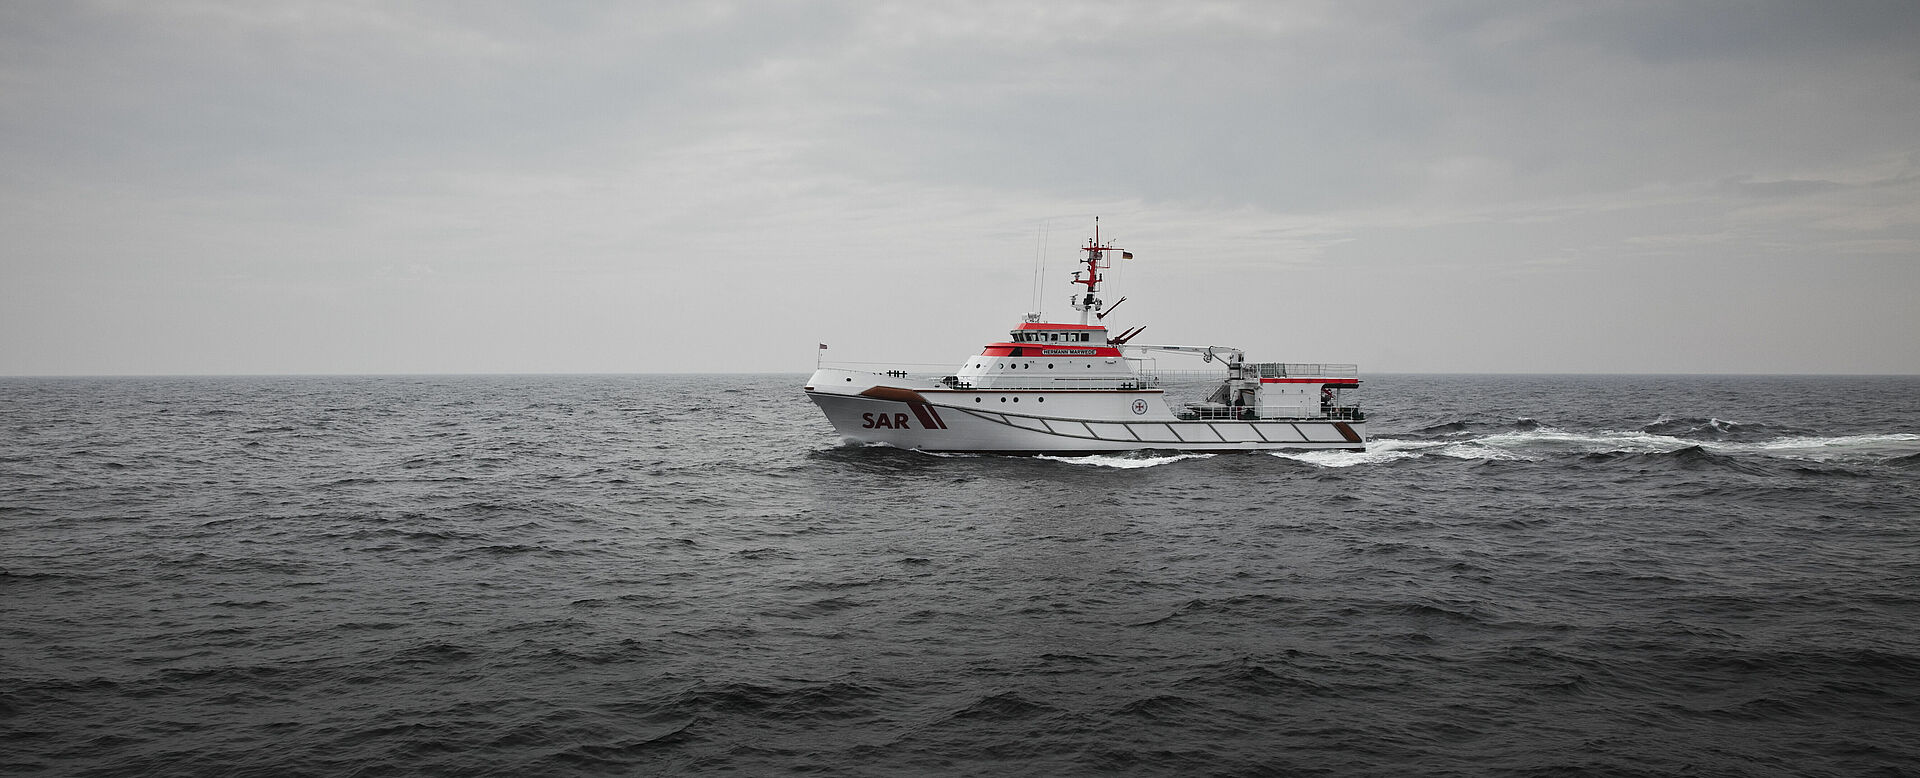 Der Seenotrettungskreuzer fährt in mittlerer Fahrt bei trübem Wetter druch die Nordsee.